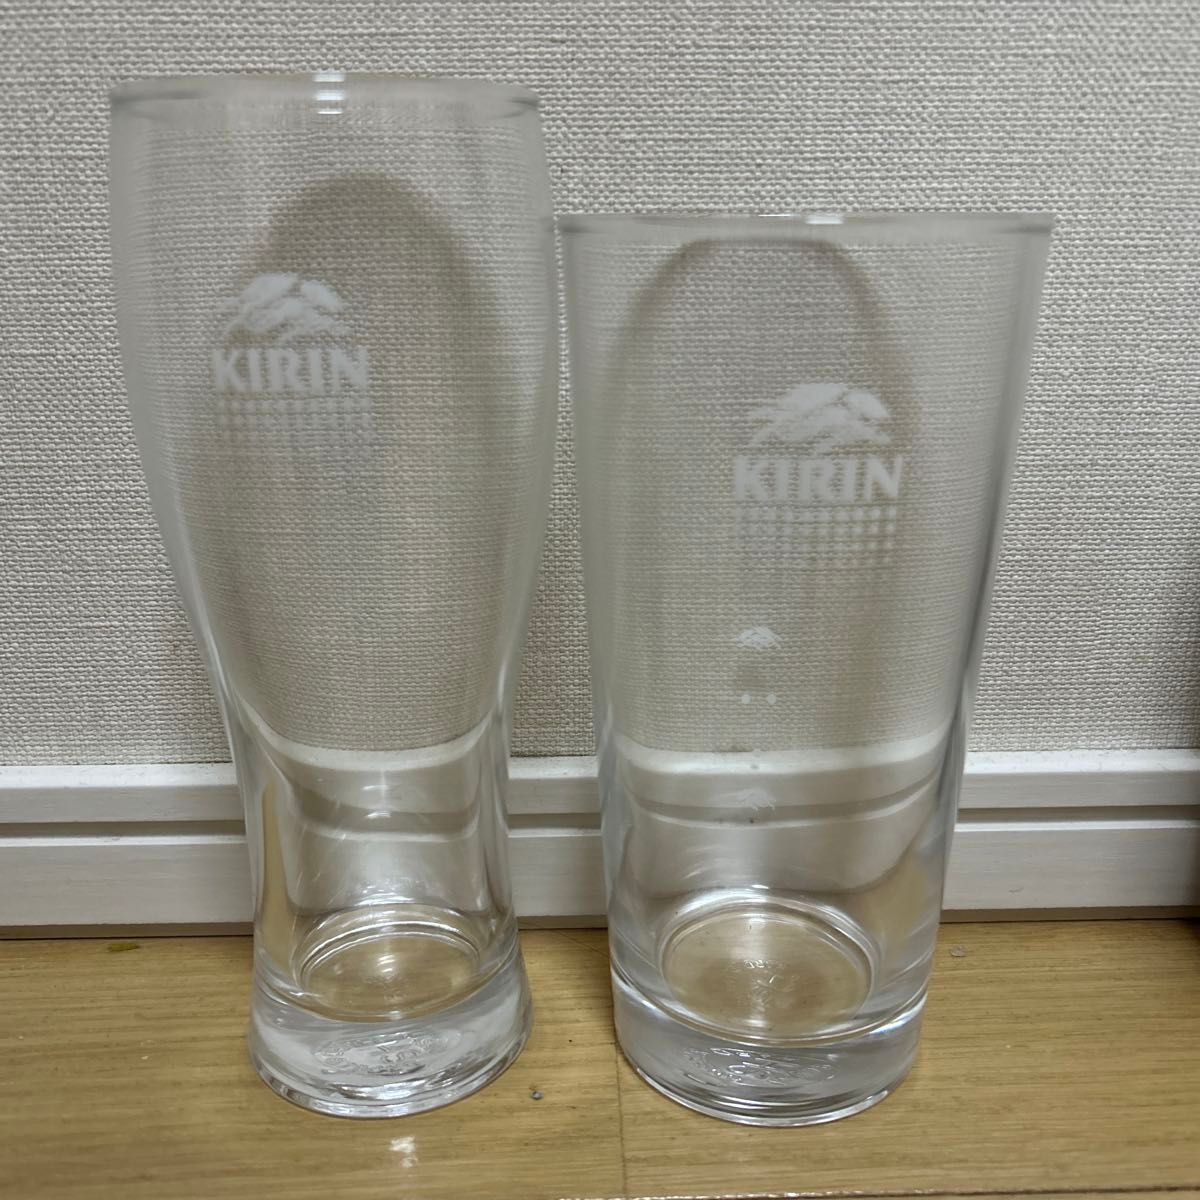 キリン キリンビール ビアグラス ビールグラス タンブラー グラス ガラス